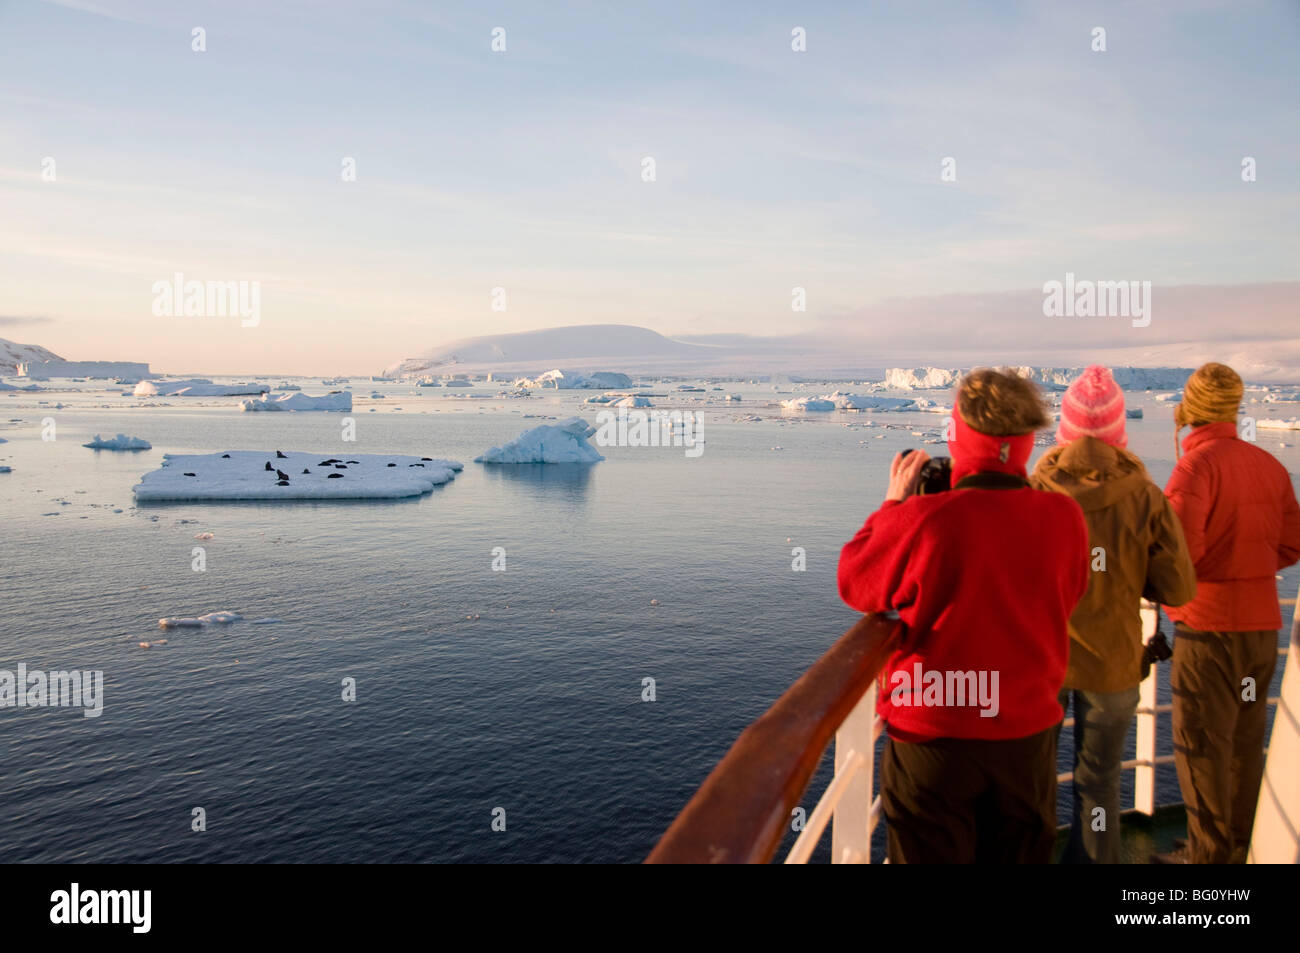 Anzeigen von Robben auf Packeis der Antarktis Klang, antarktische Halbinsel, Antarktis, Polarregionen Stockfoto